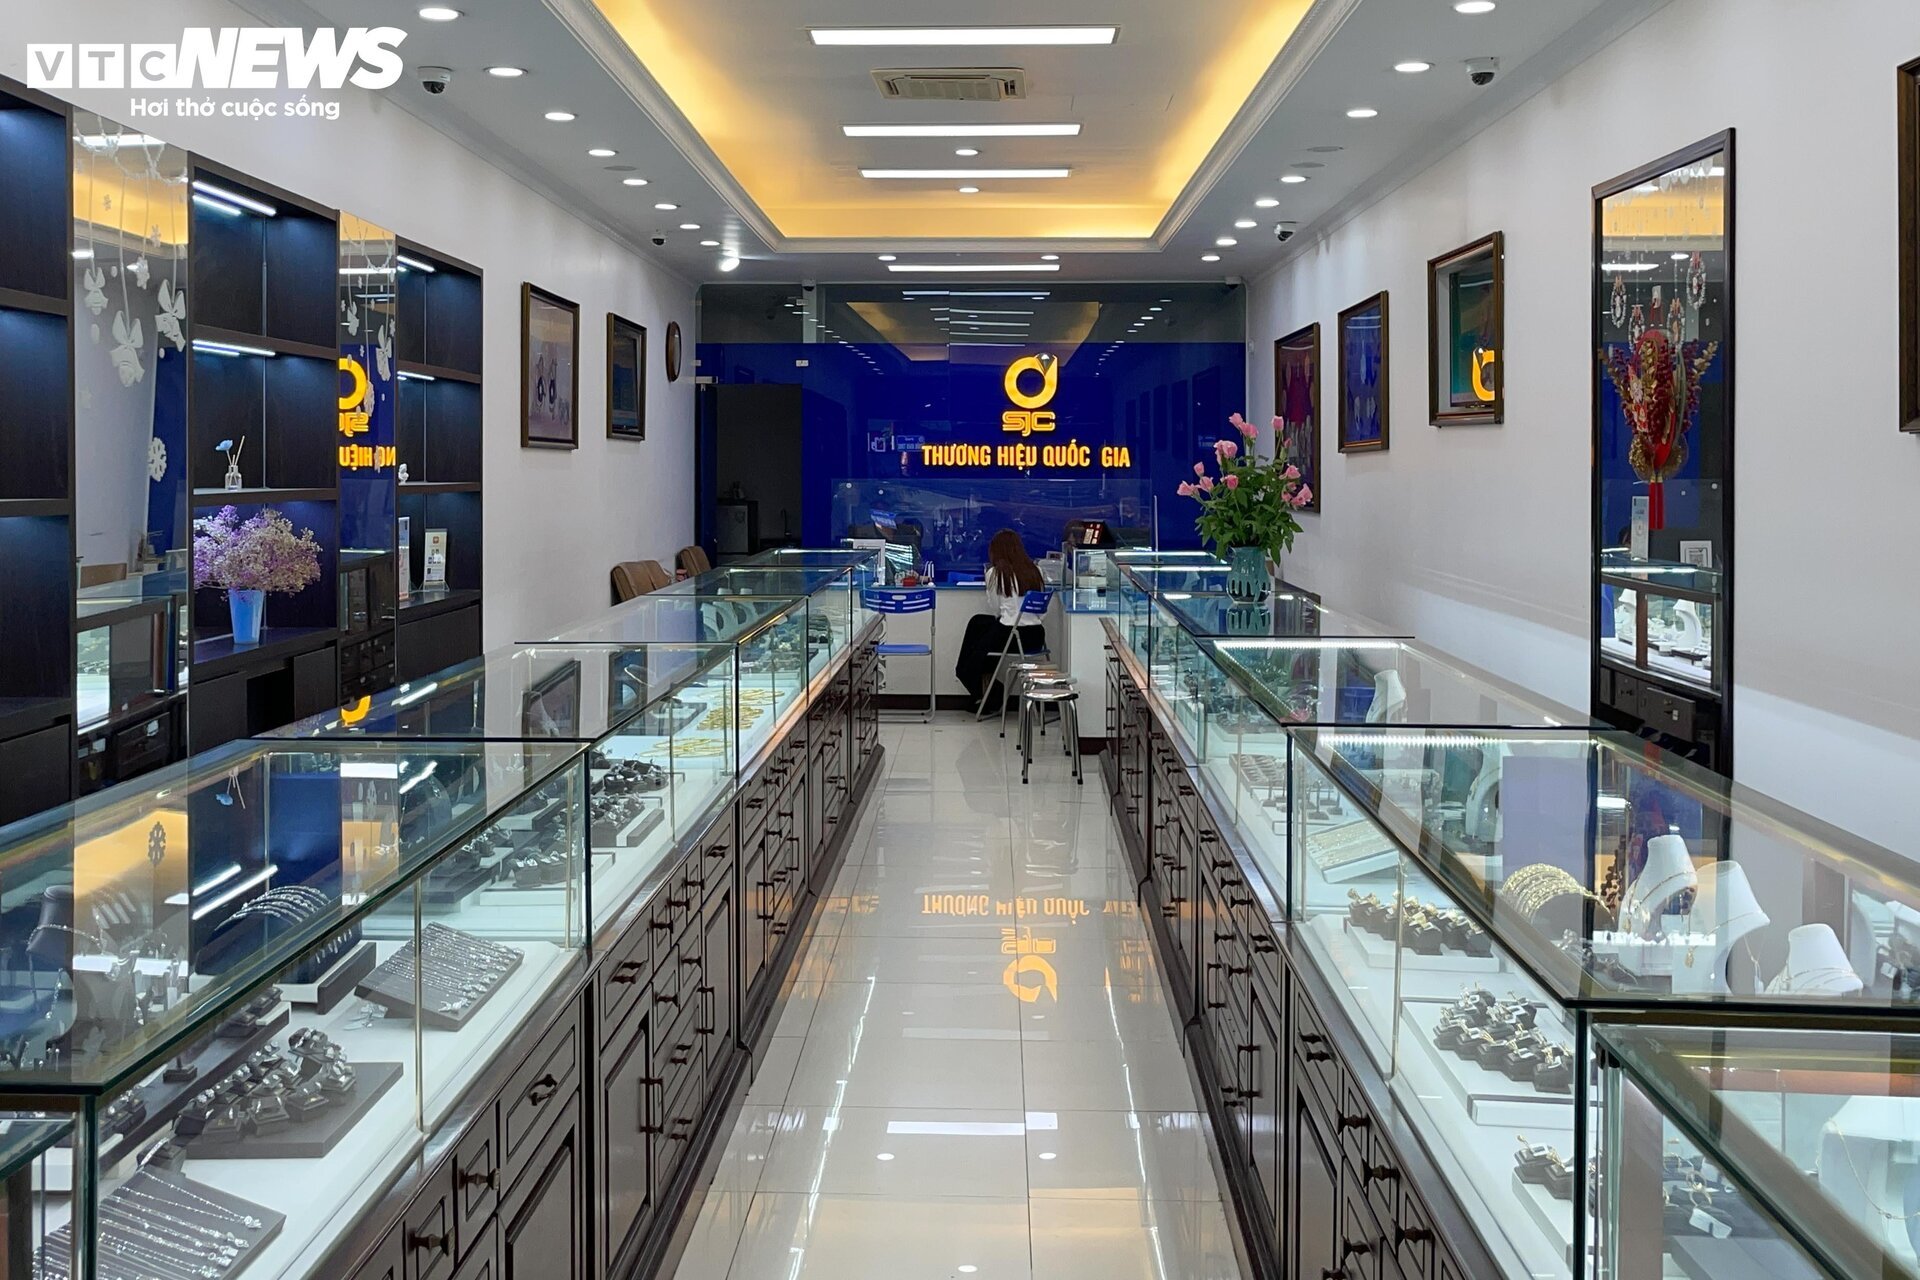 Giá vàng biến động mạnh, cửa hàng ở Hà Nội nhiều lúc ngừng bán- Ảnh 8.